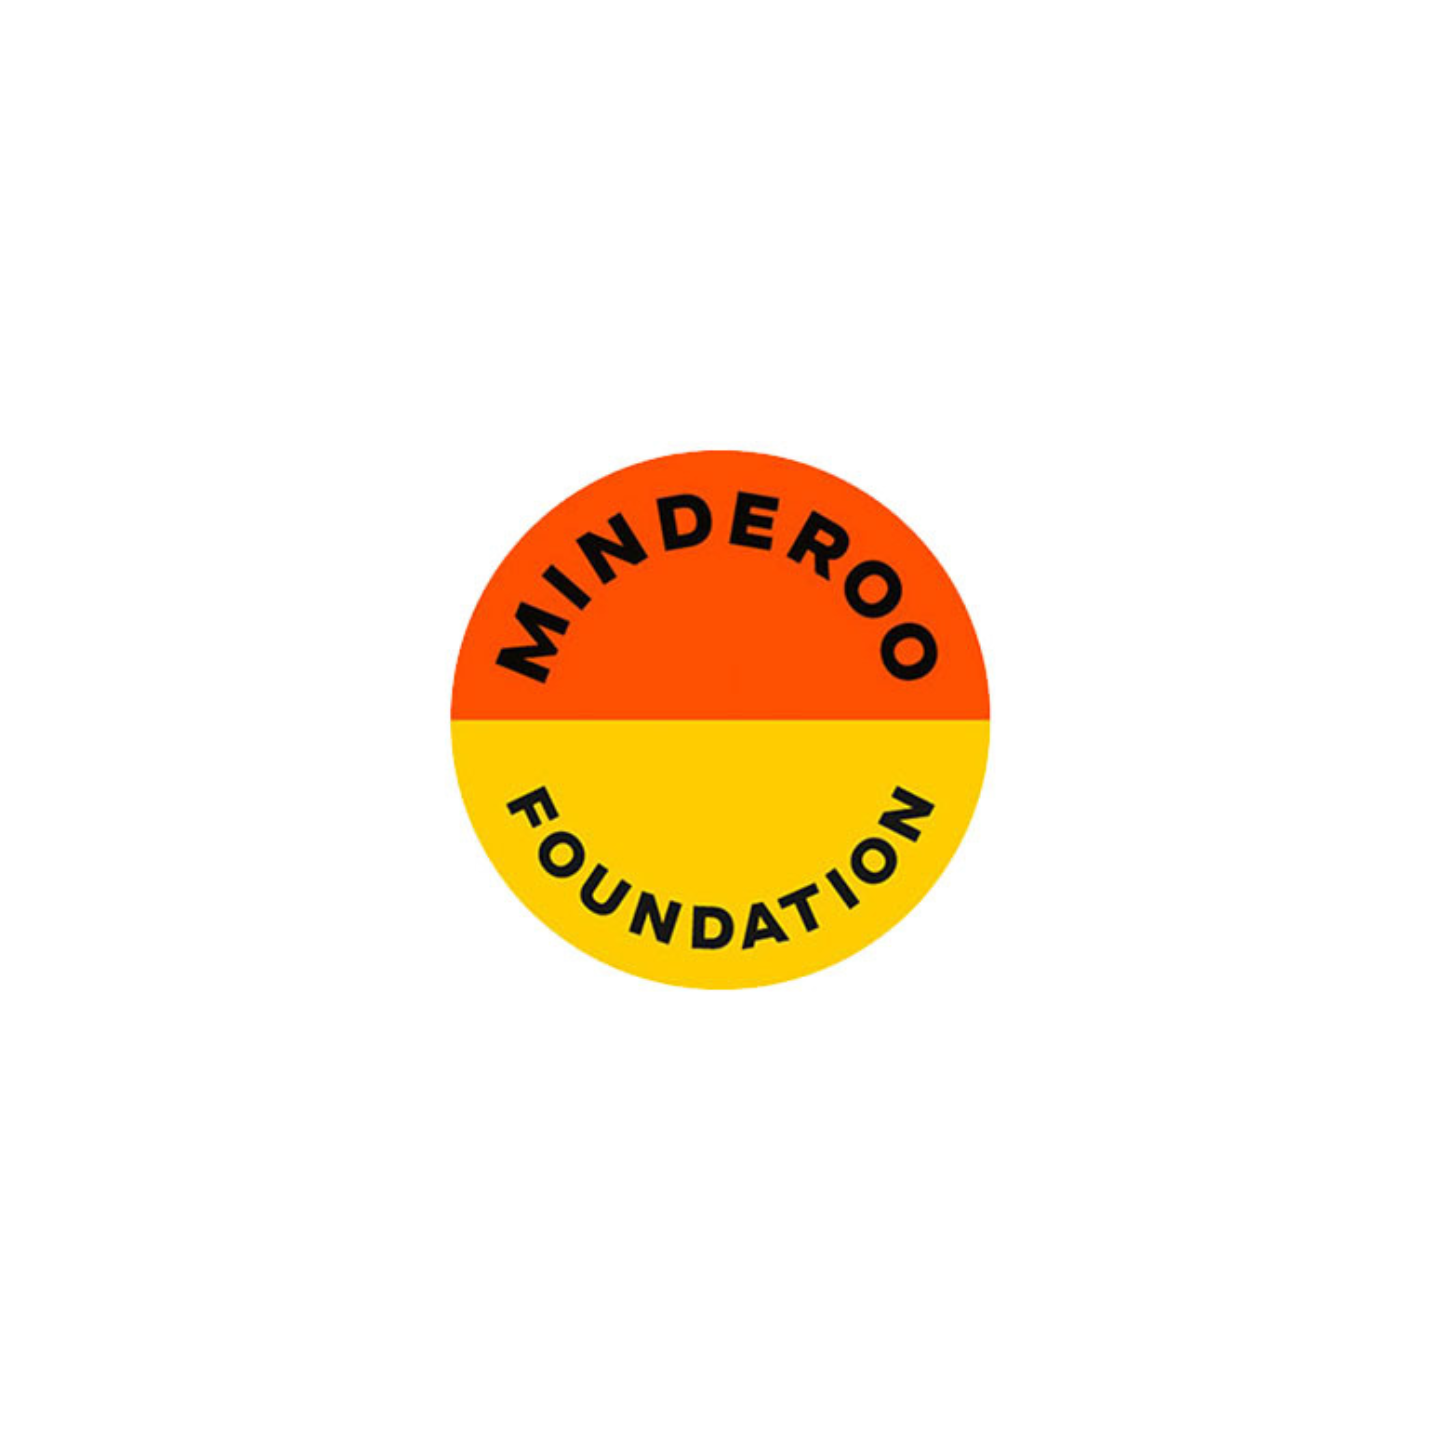 Minderoo foundation